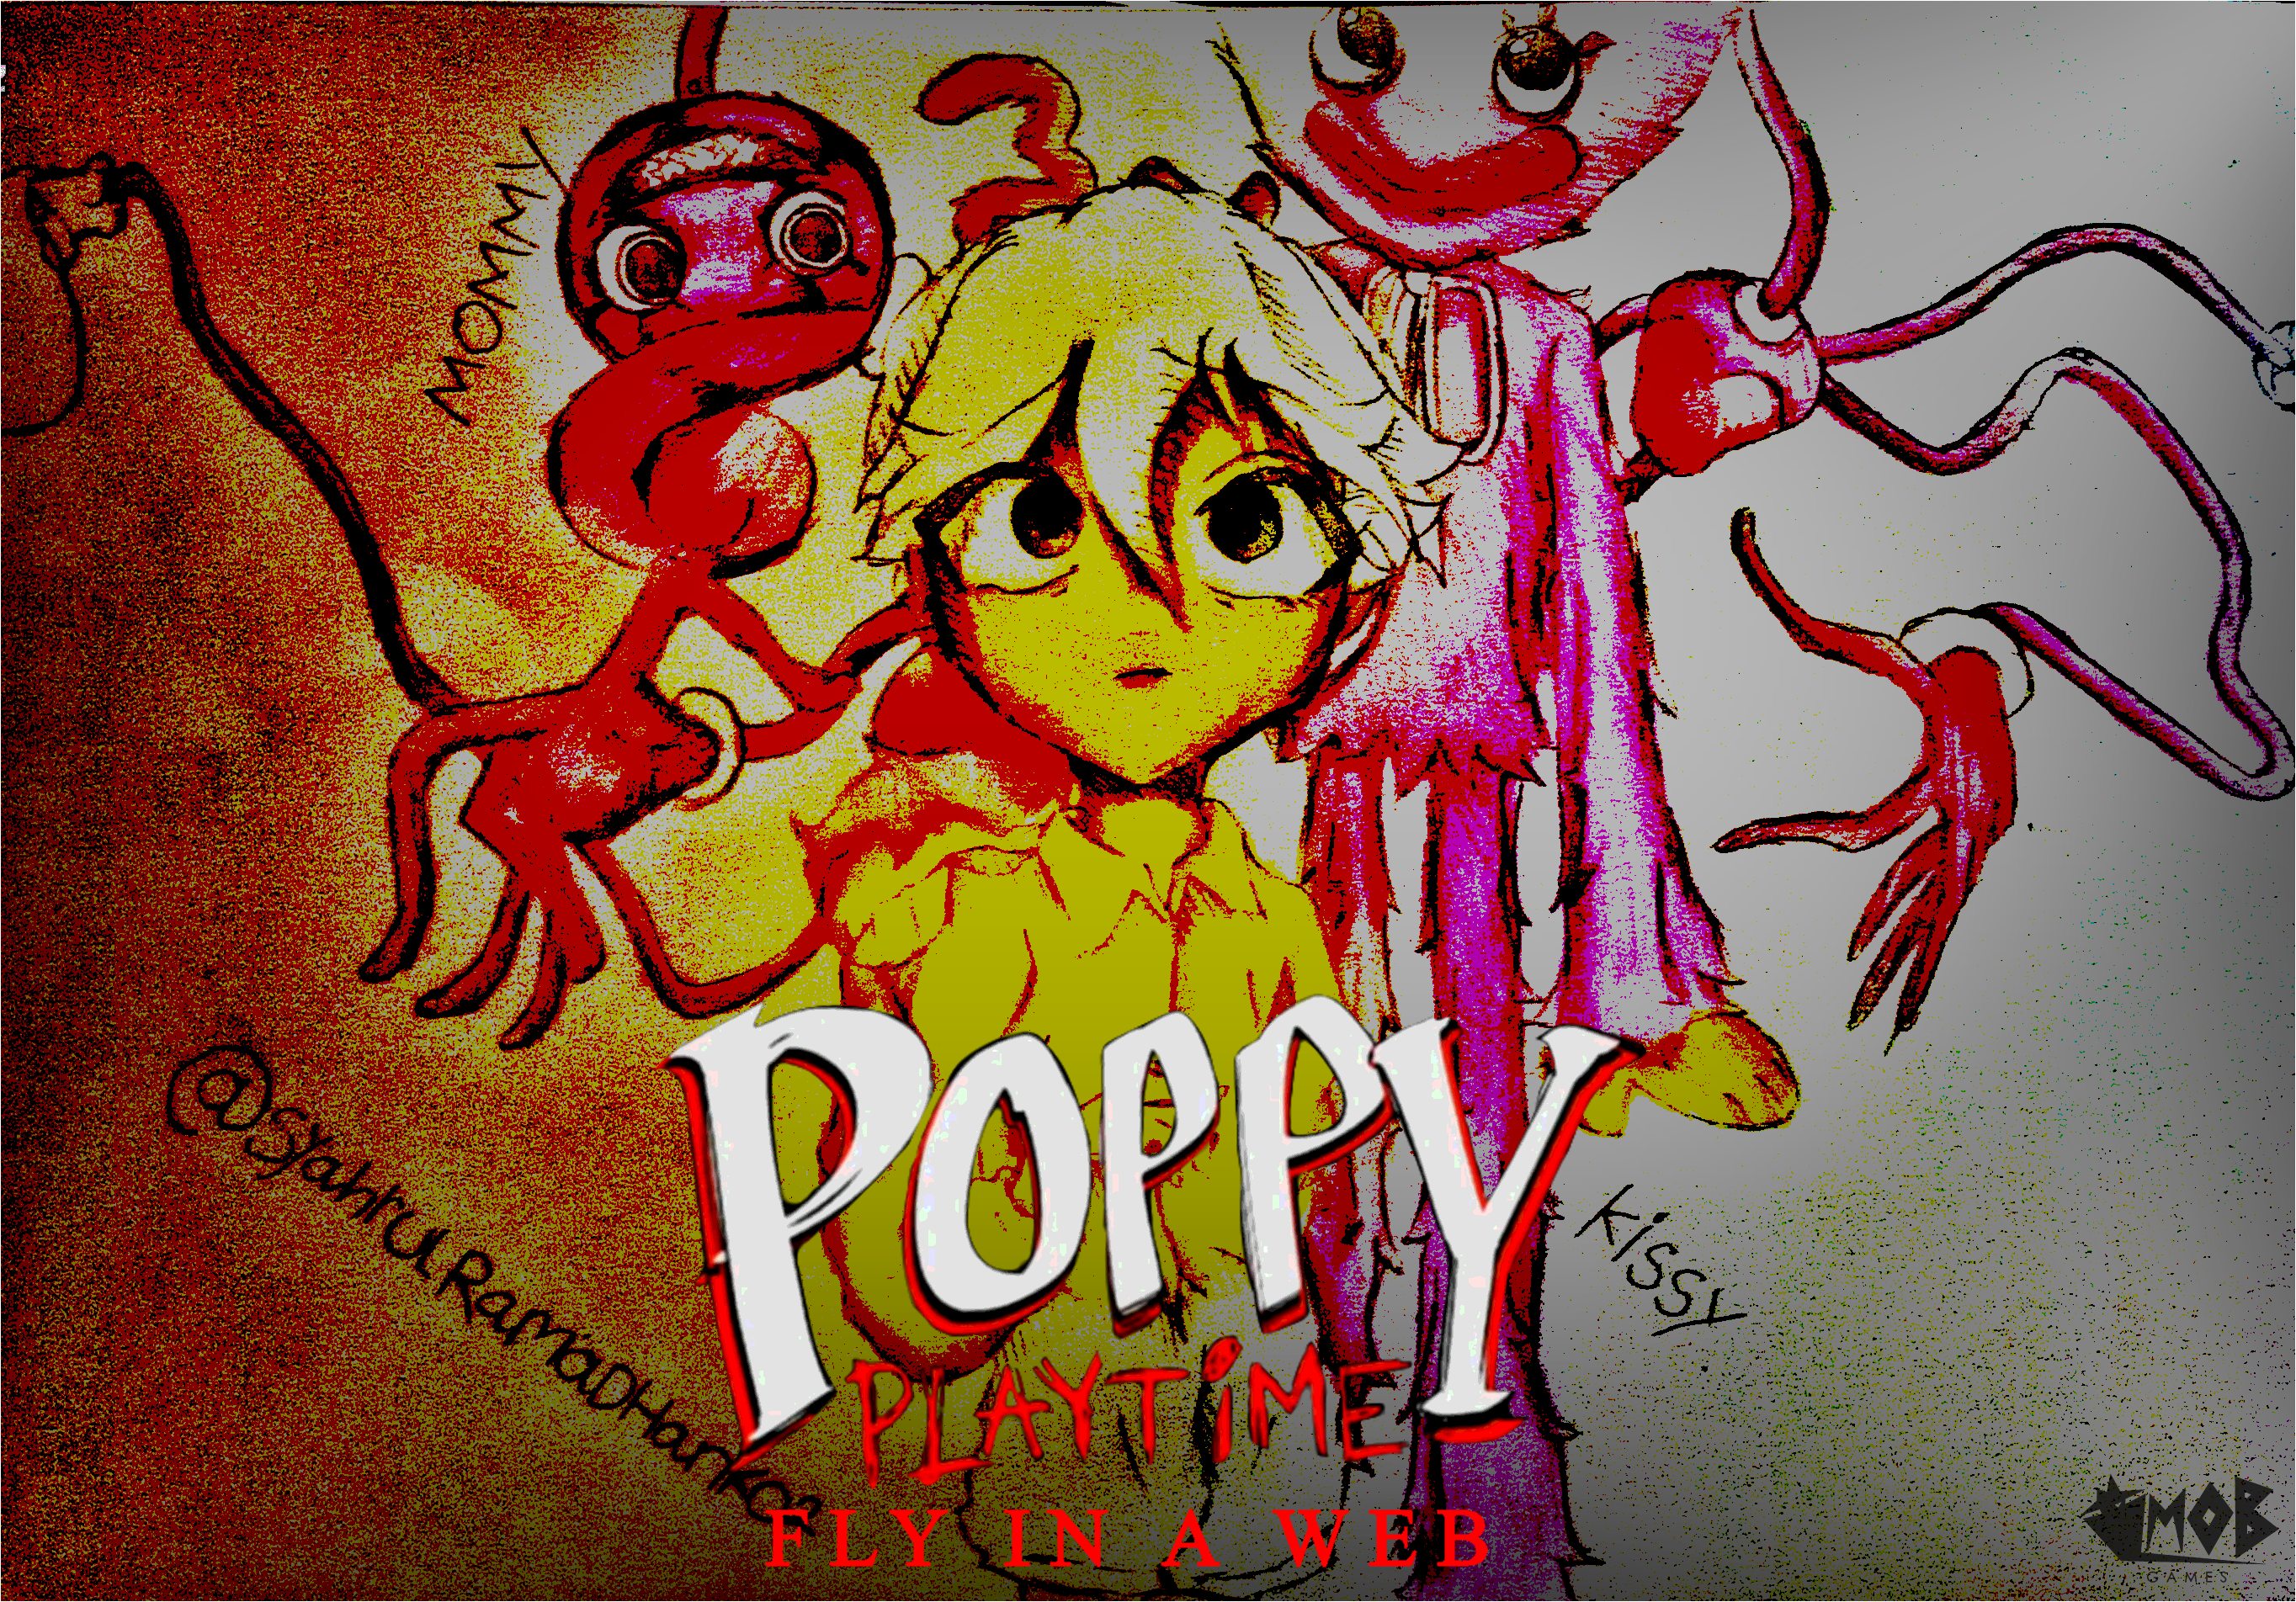 Poppy Playtime Fanart! by erwinwin on DeviantArt